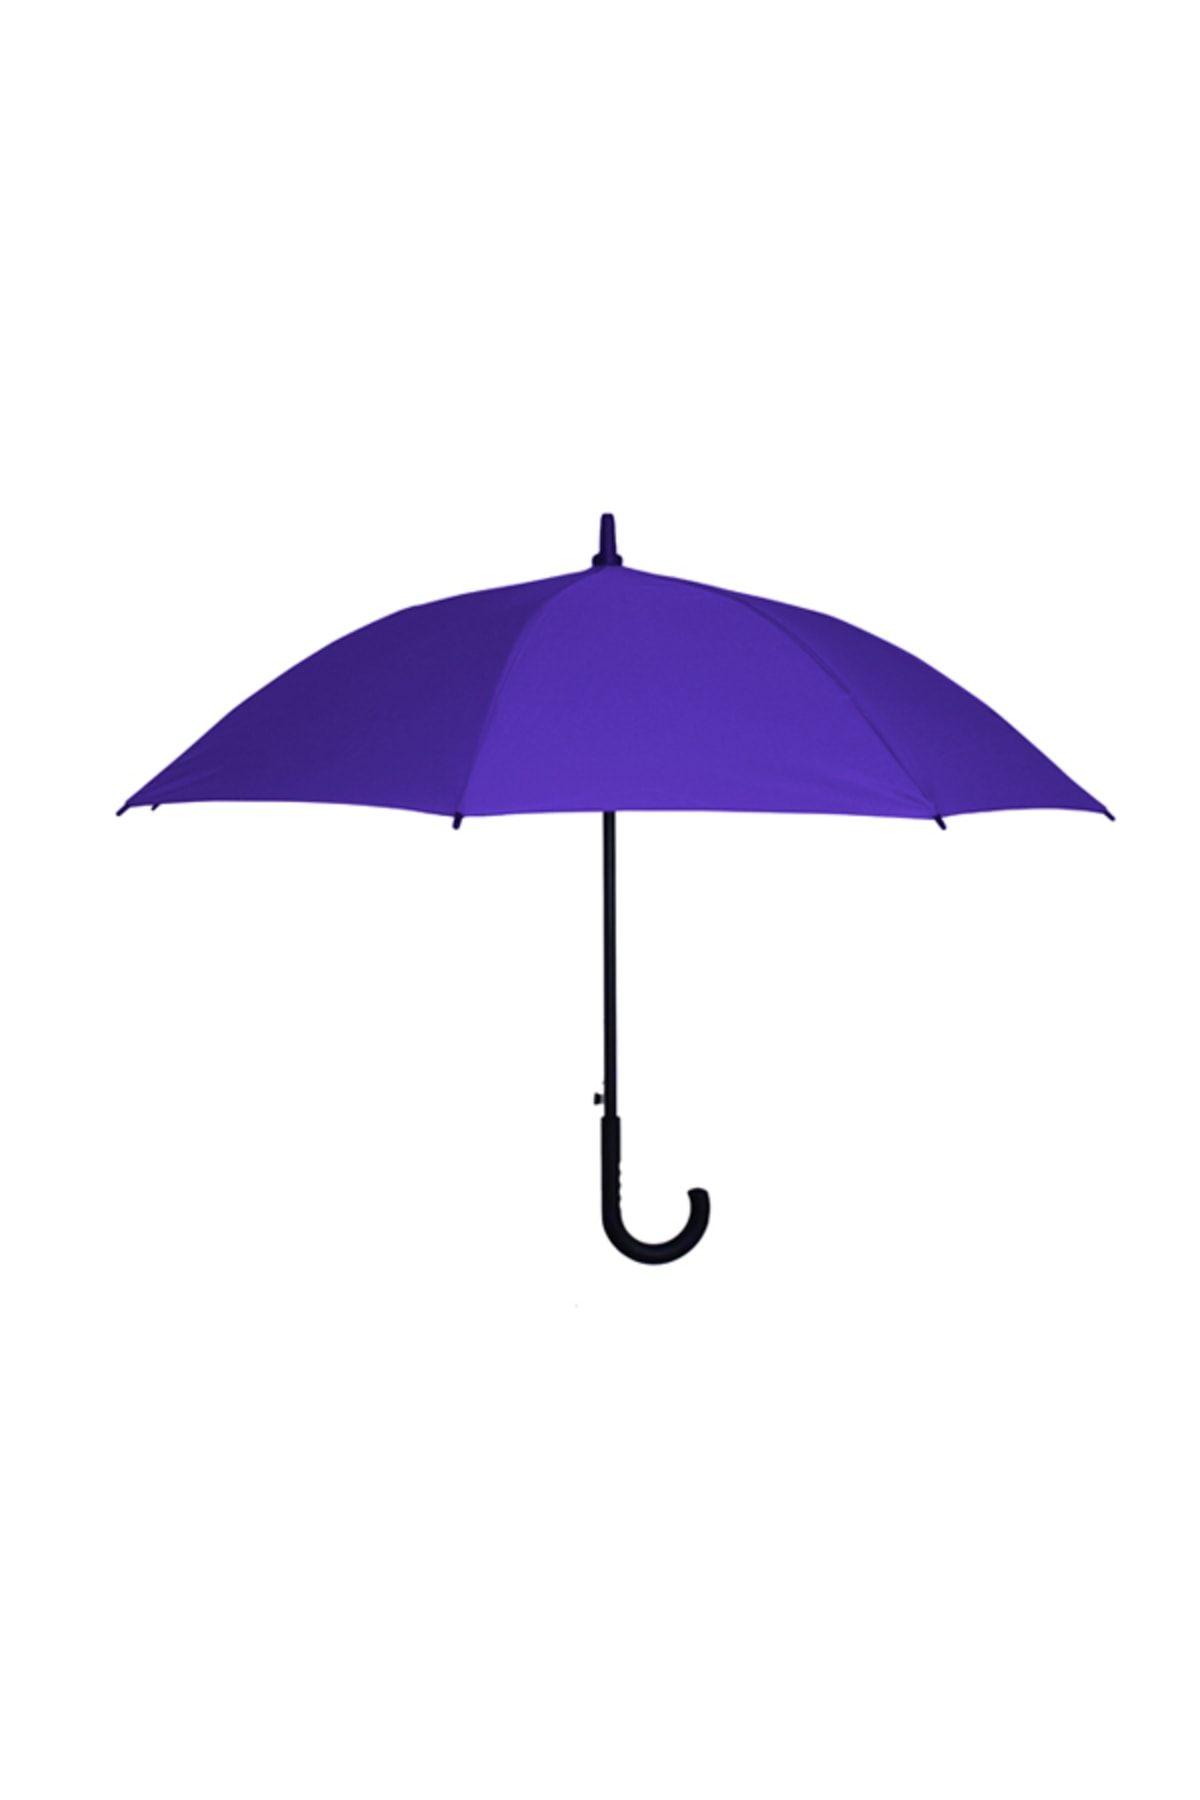 Sunlife 8 Telli Otomatik Fiberglass Baston Saks Mavi Renkli Yağmur Şemsiyesi